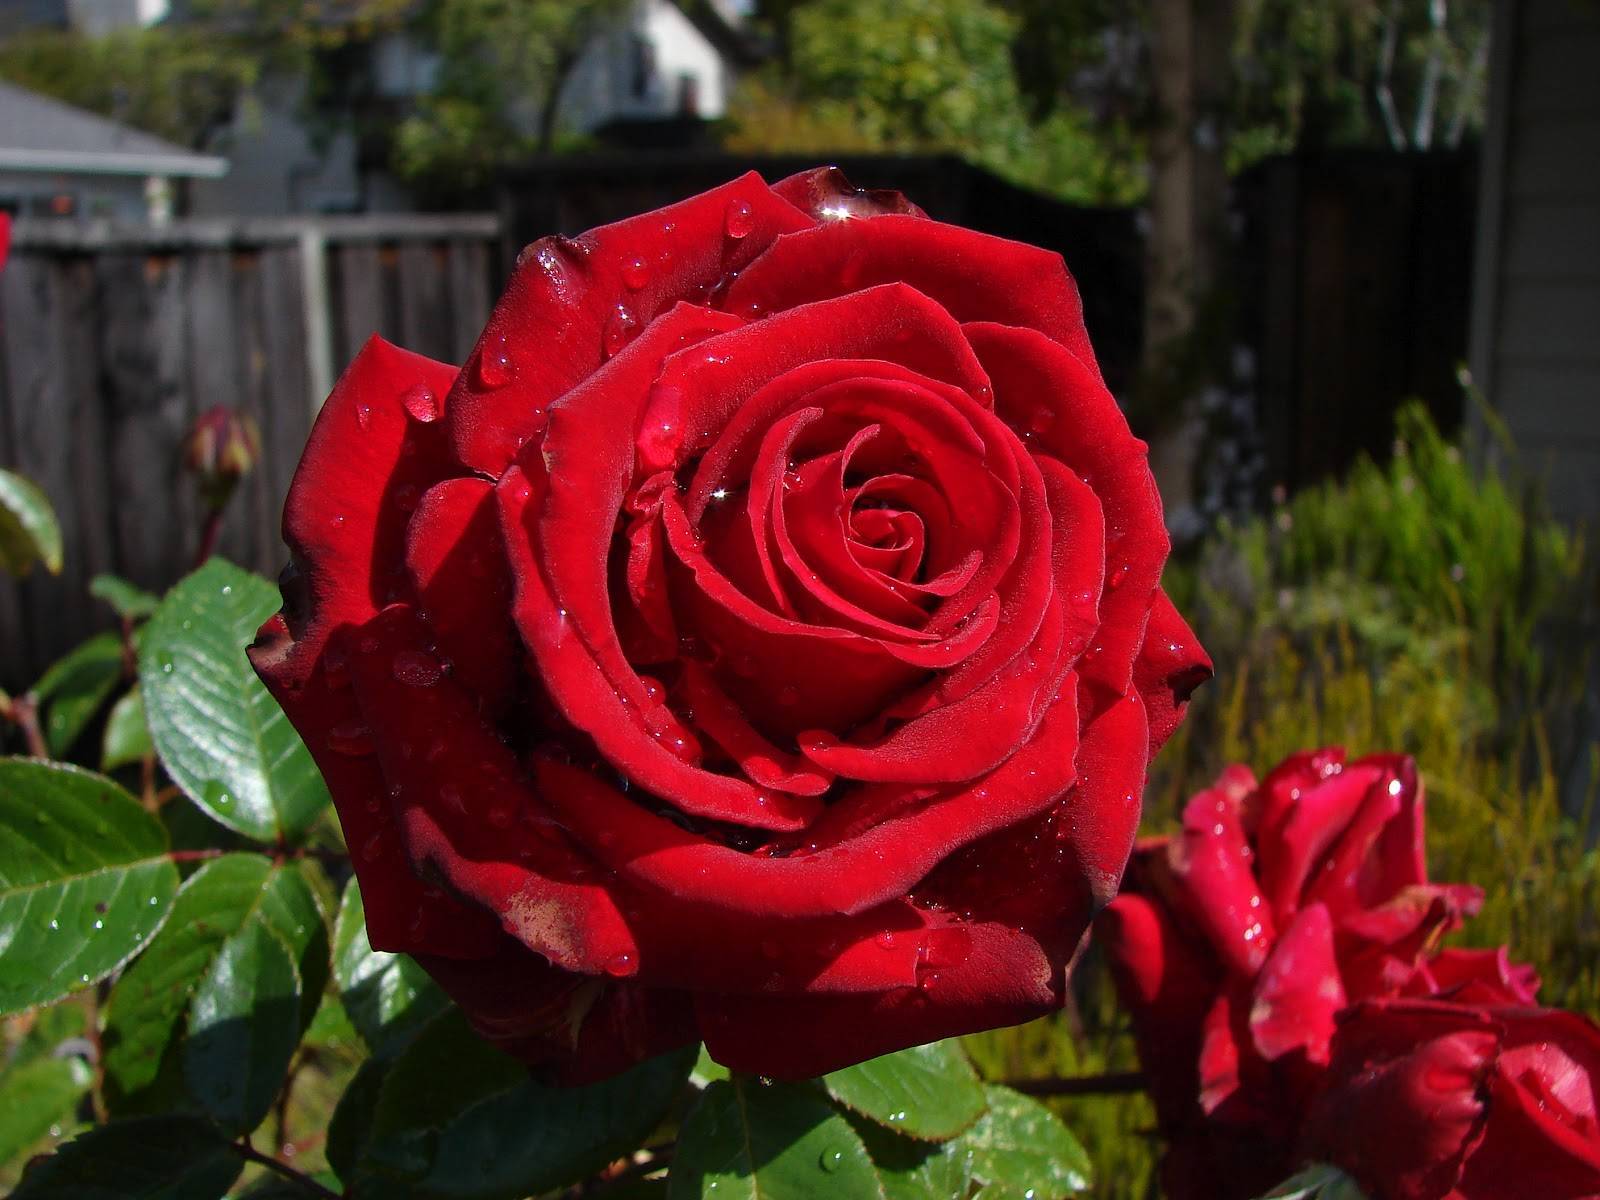 Канадские розы: описание лучших сортов с фото и правила ухода